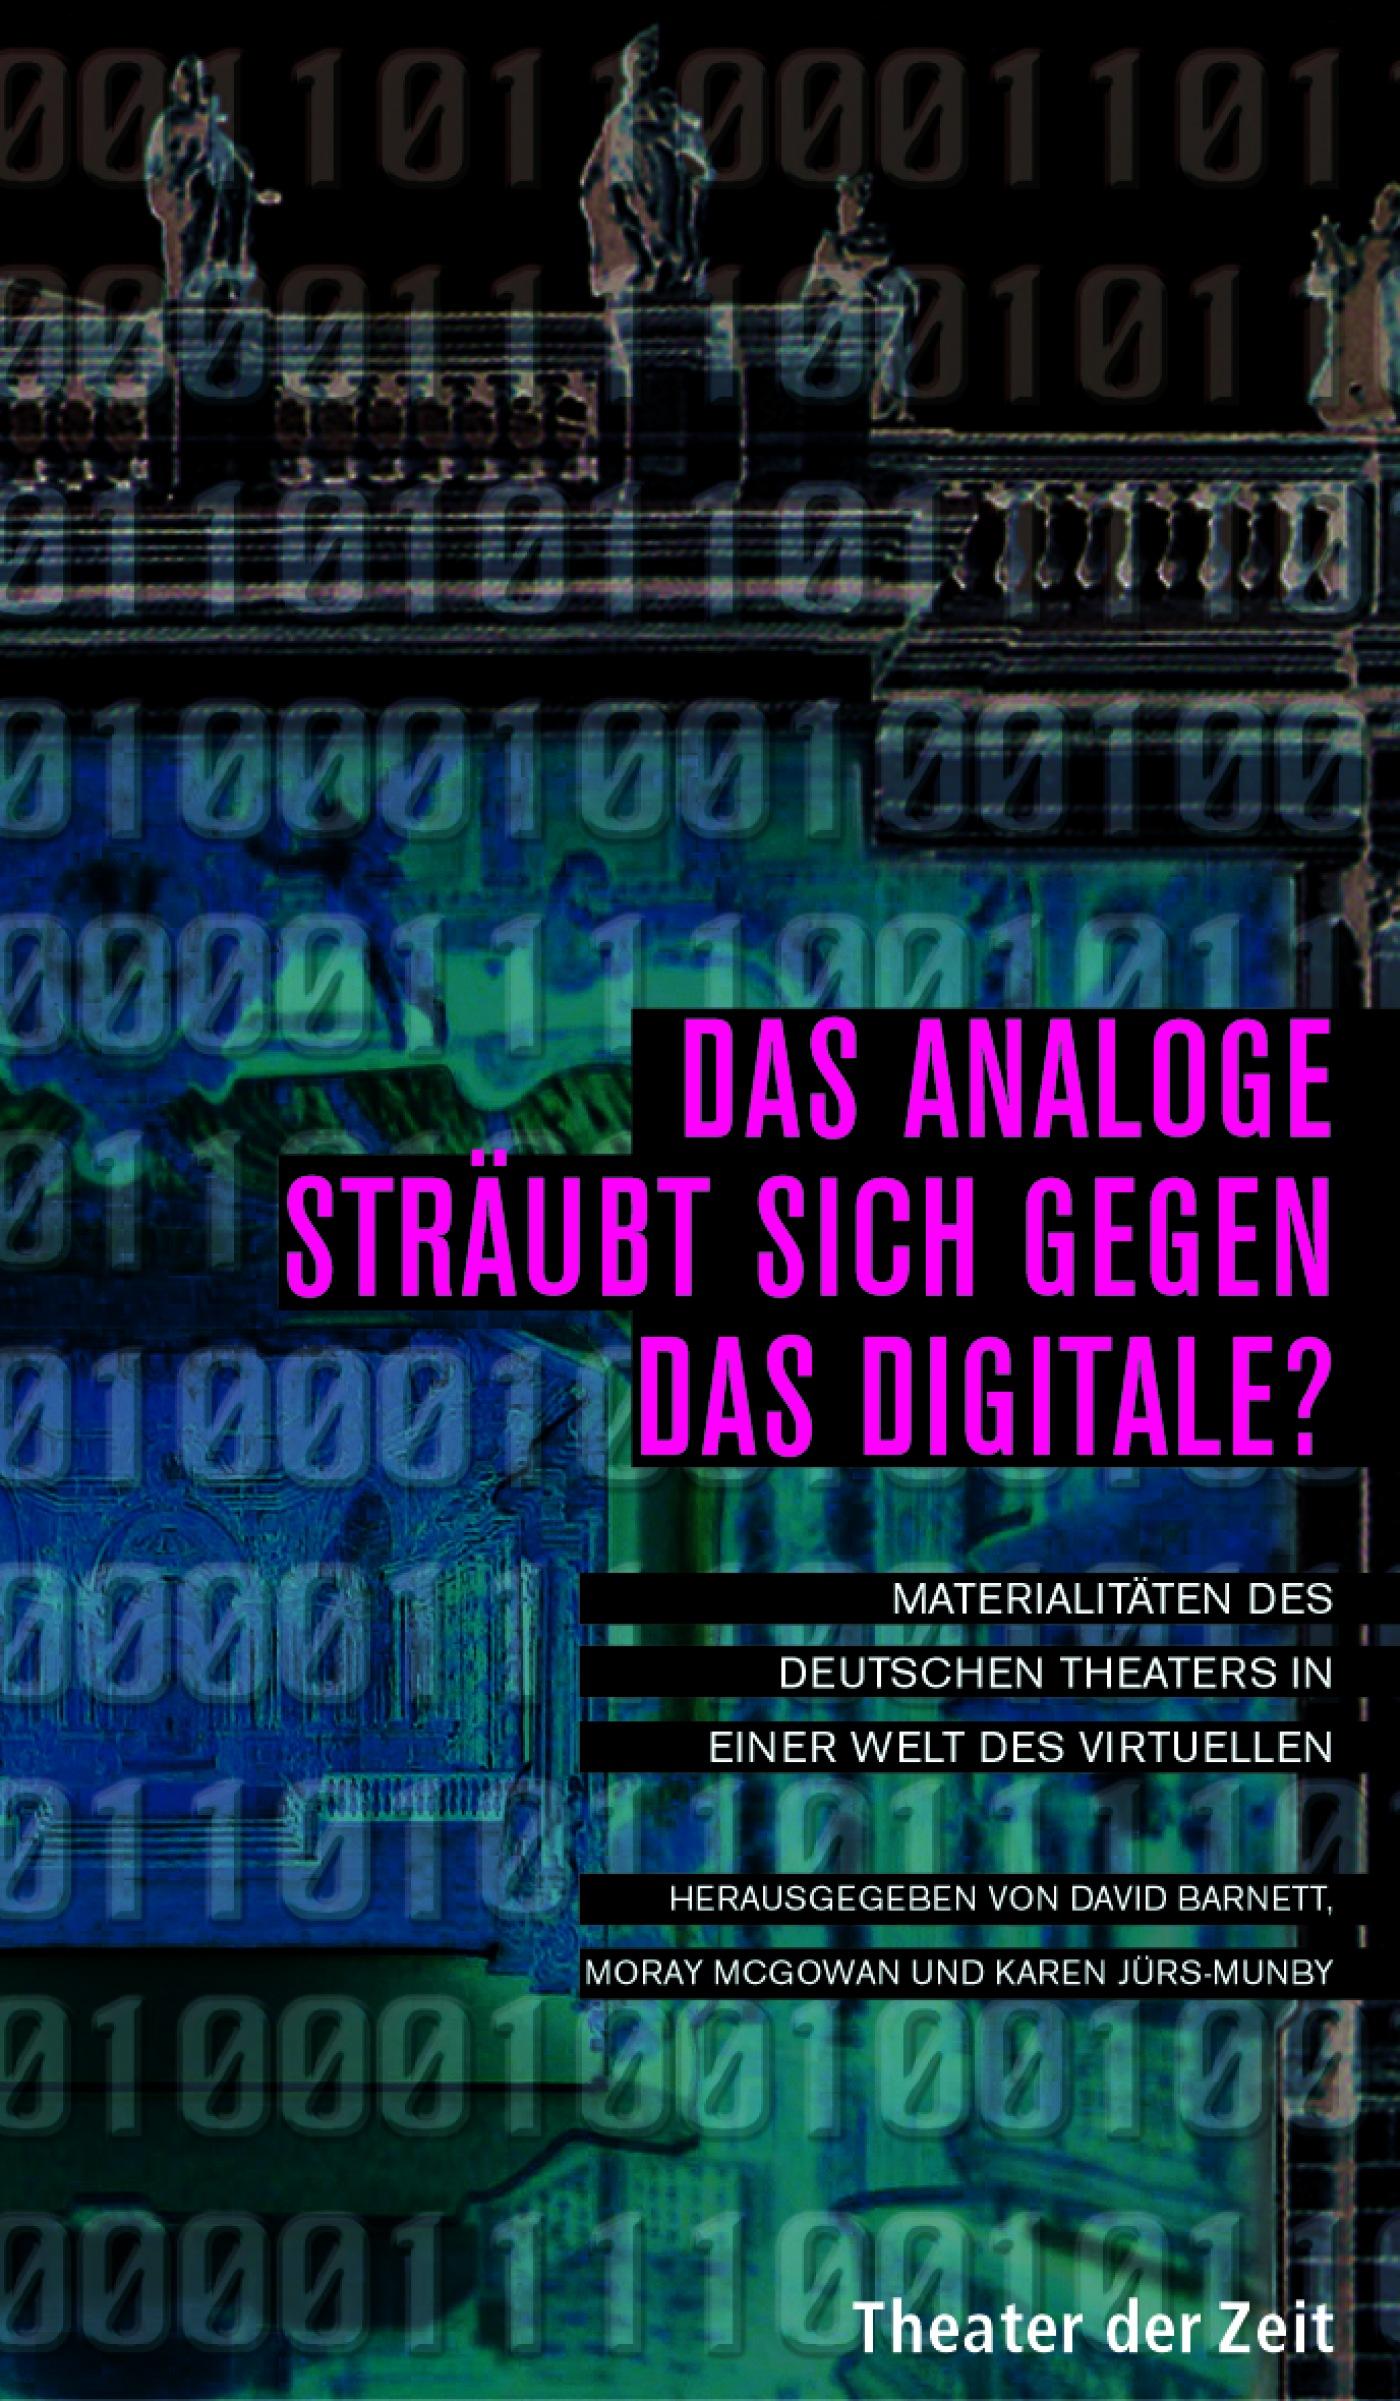 Recherchen 37 "Das Analoge sträubt sich gegen das Digitale?"